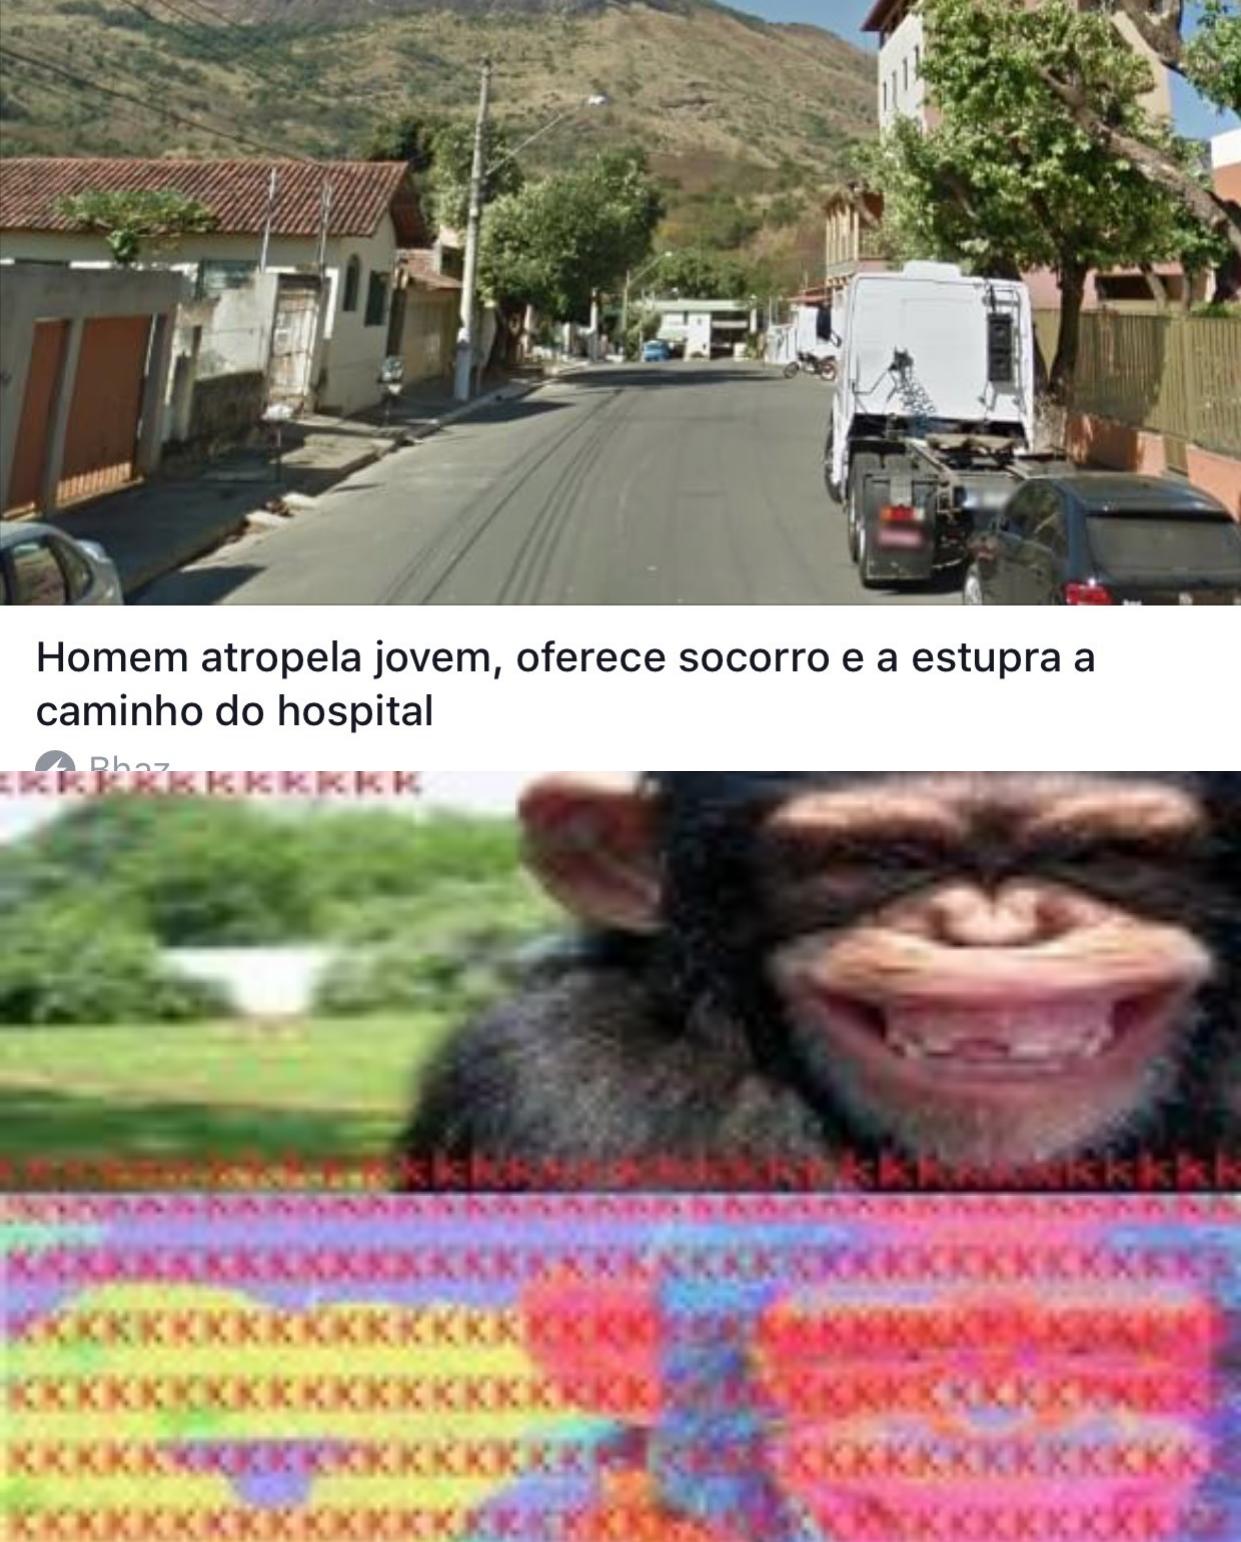 Macacos rindo de noticia chocantes